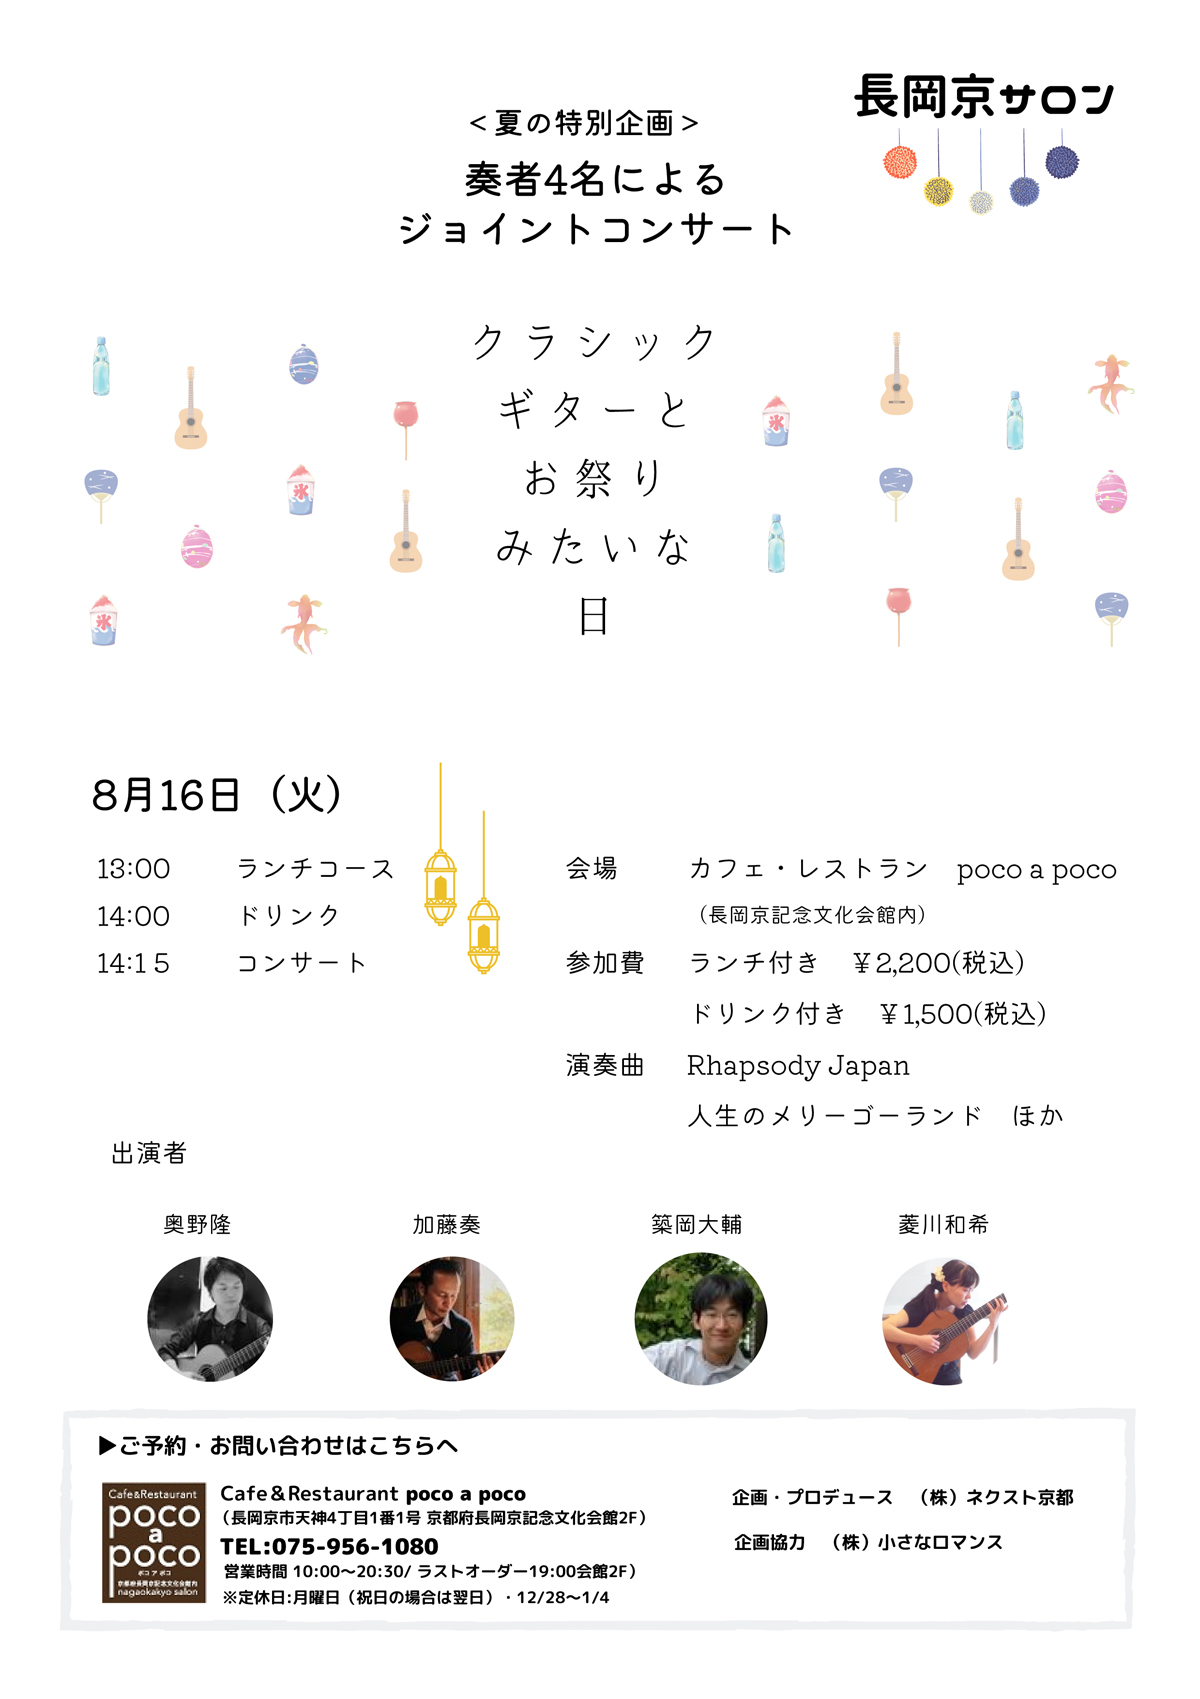 長岡京サロン 【夏の特別企画】奏者4名によるジョイントコンサート クラシックギターとお祭りみたいな日